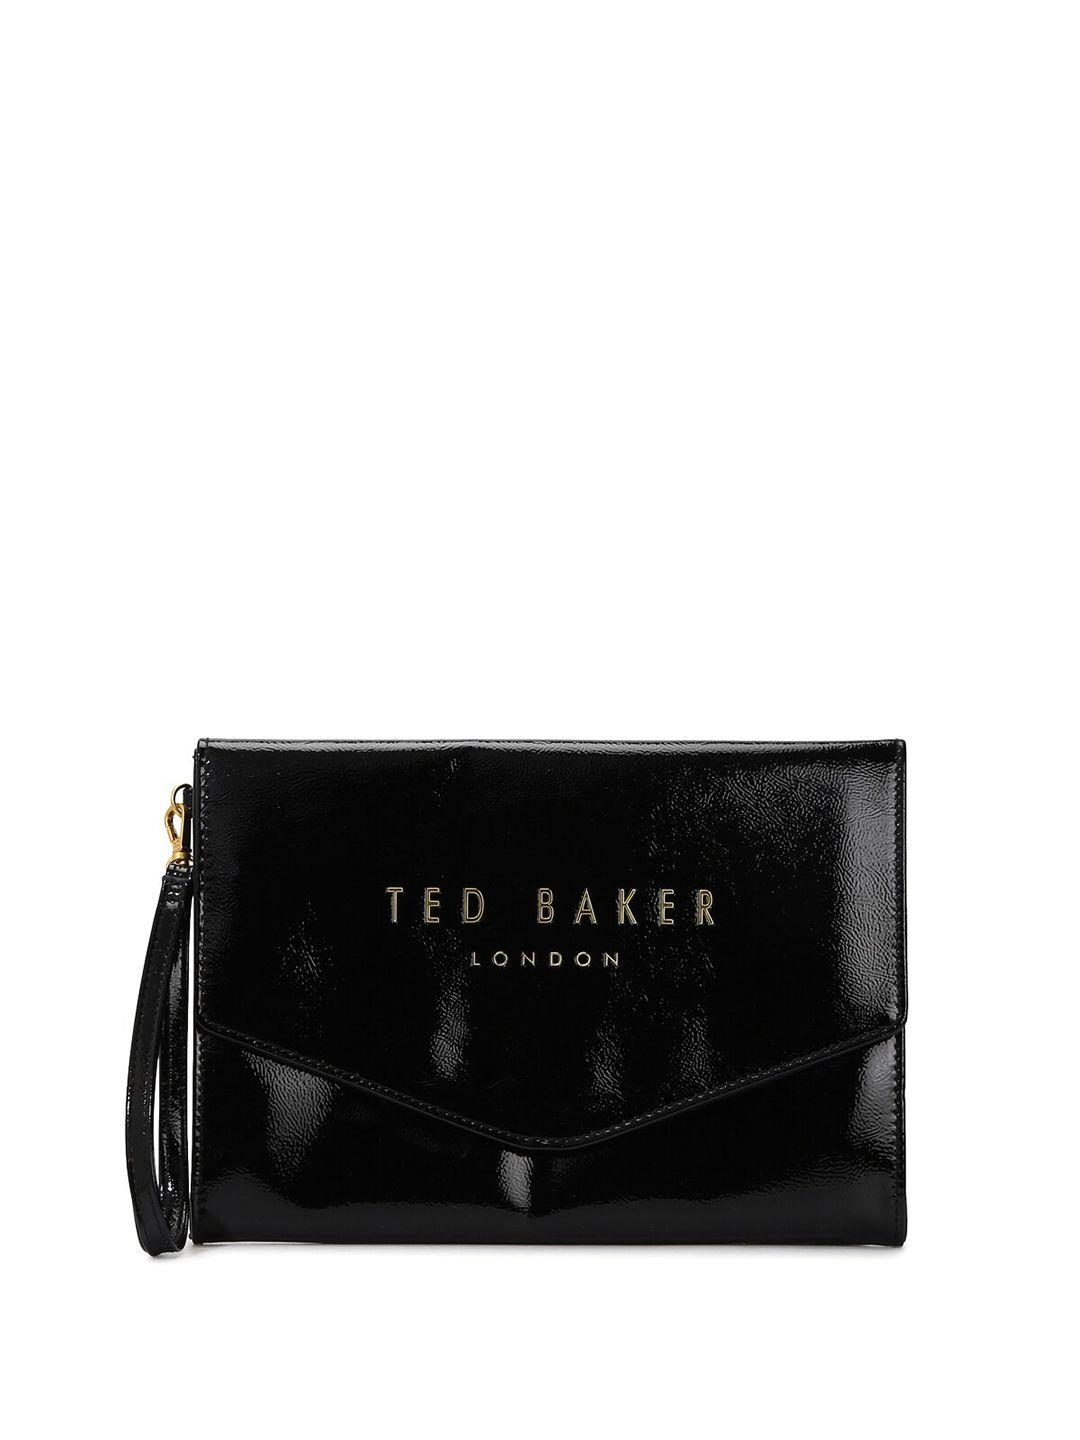 ted baker embellished purse clutch